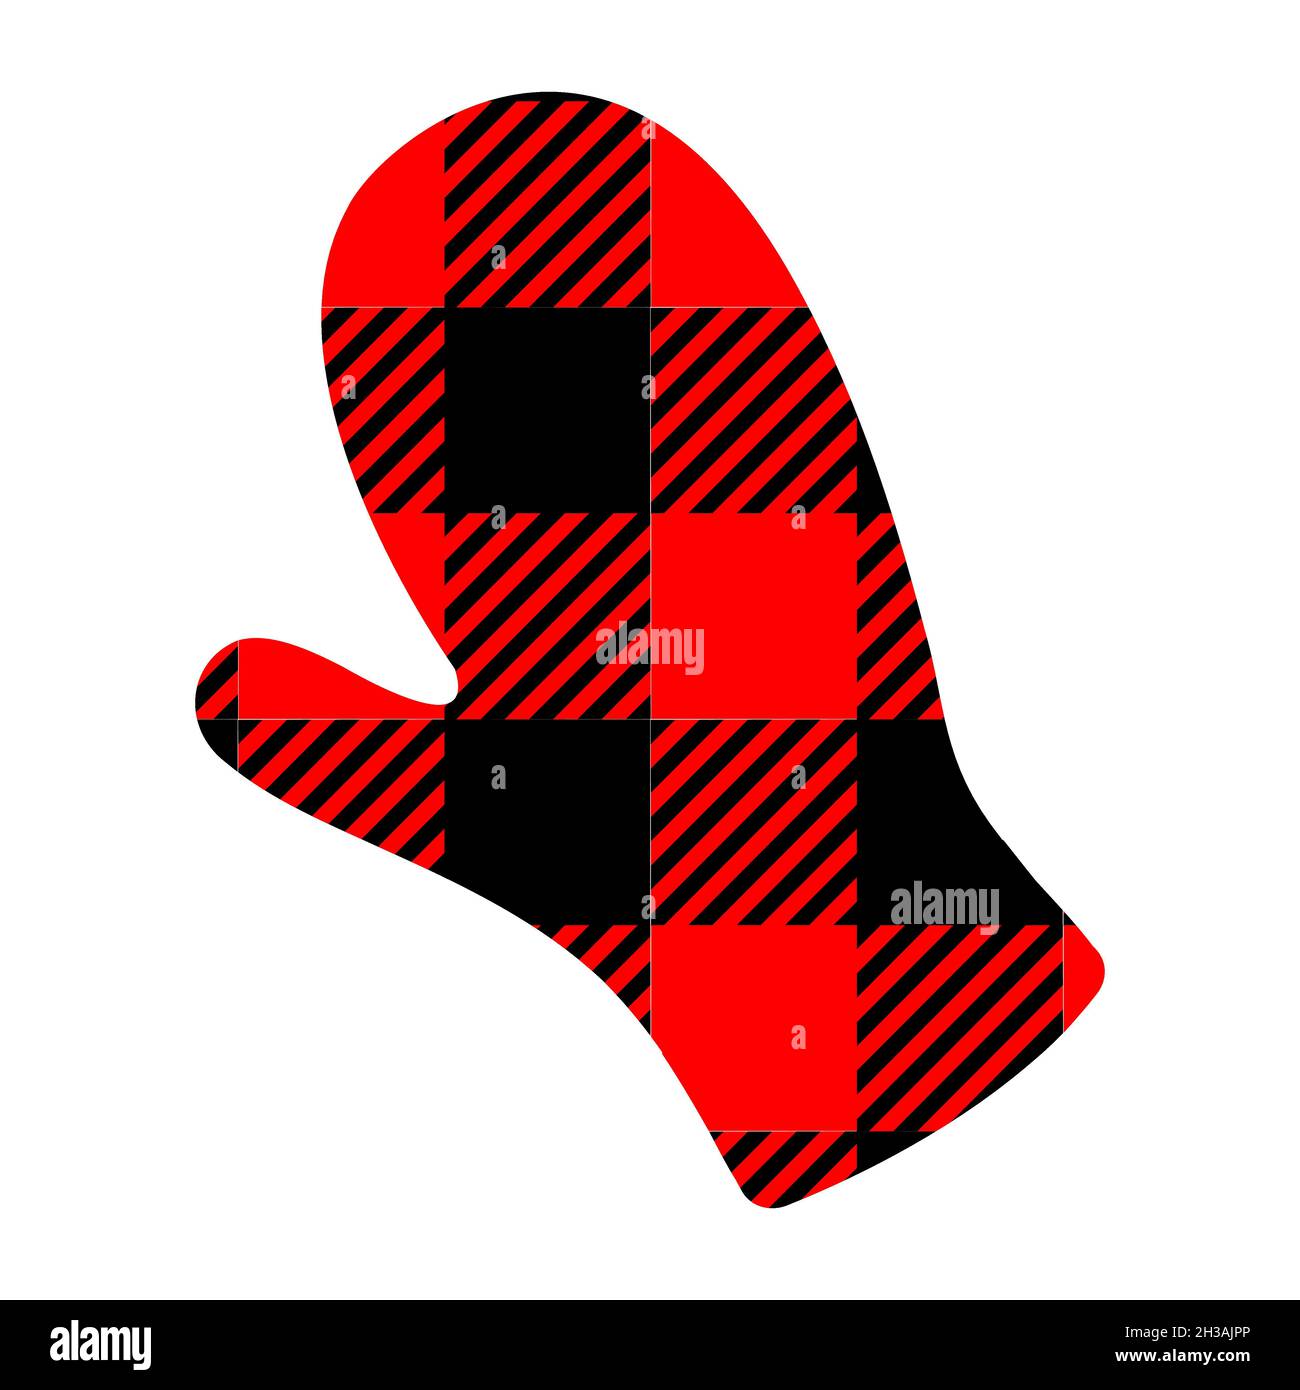 Guanto invernale con motivo bufalo nero e rosso. Forma palma umana con stampa a scacchi Gingham. Illustrazione piatta vettoriale. Illustrazione Vettoriale